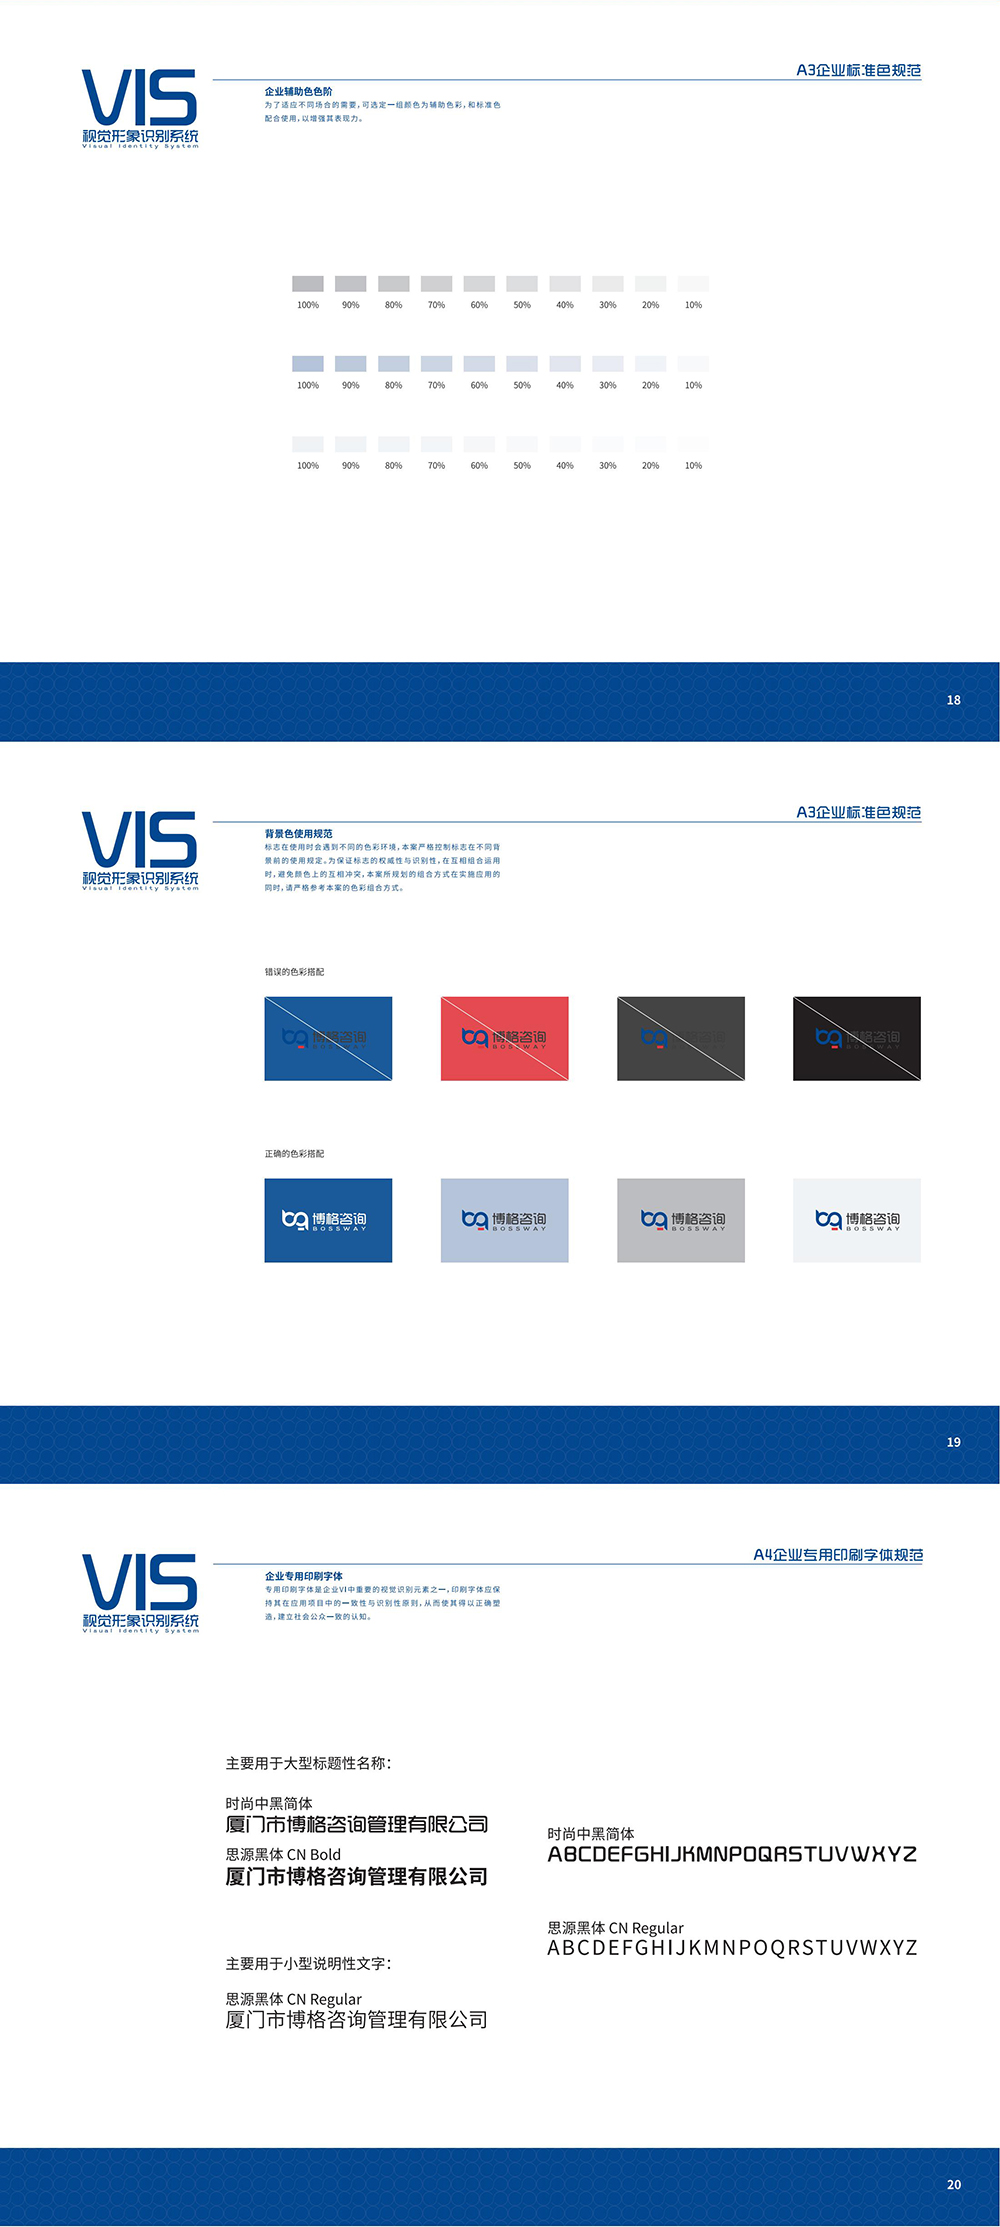 VIS视觉形象系统_01_02.jpg